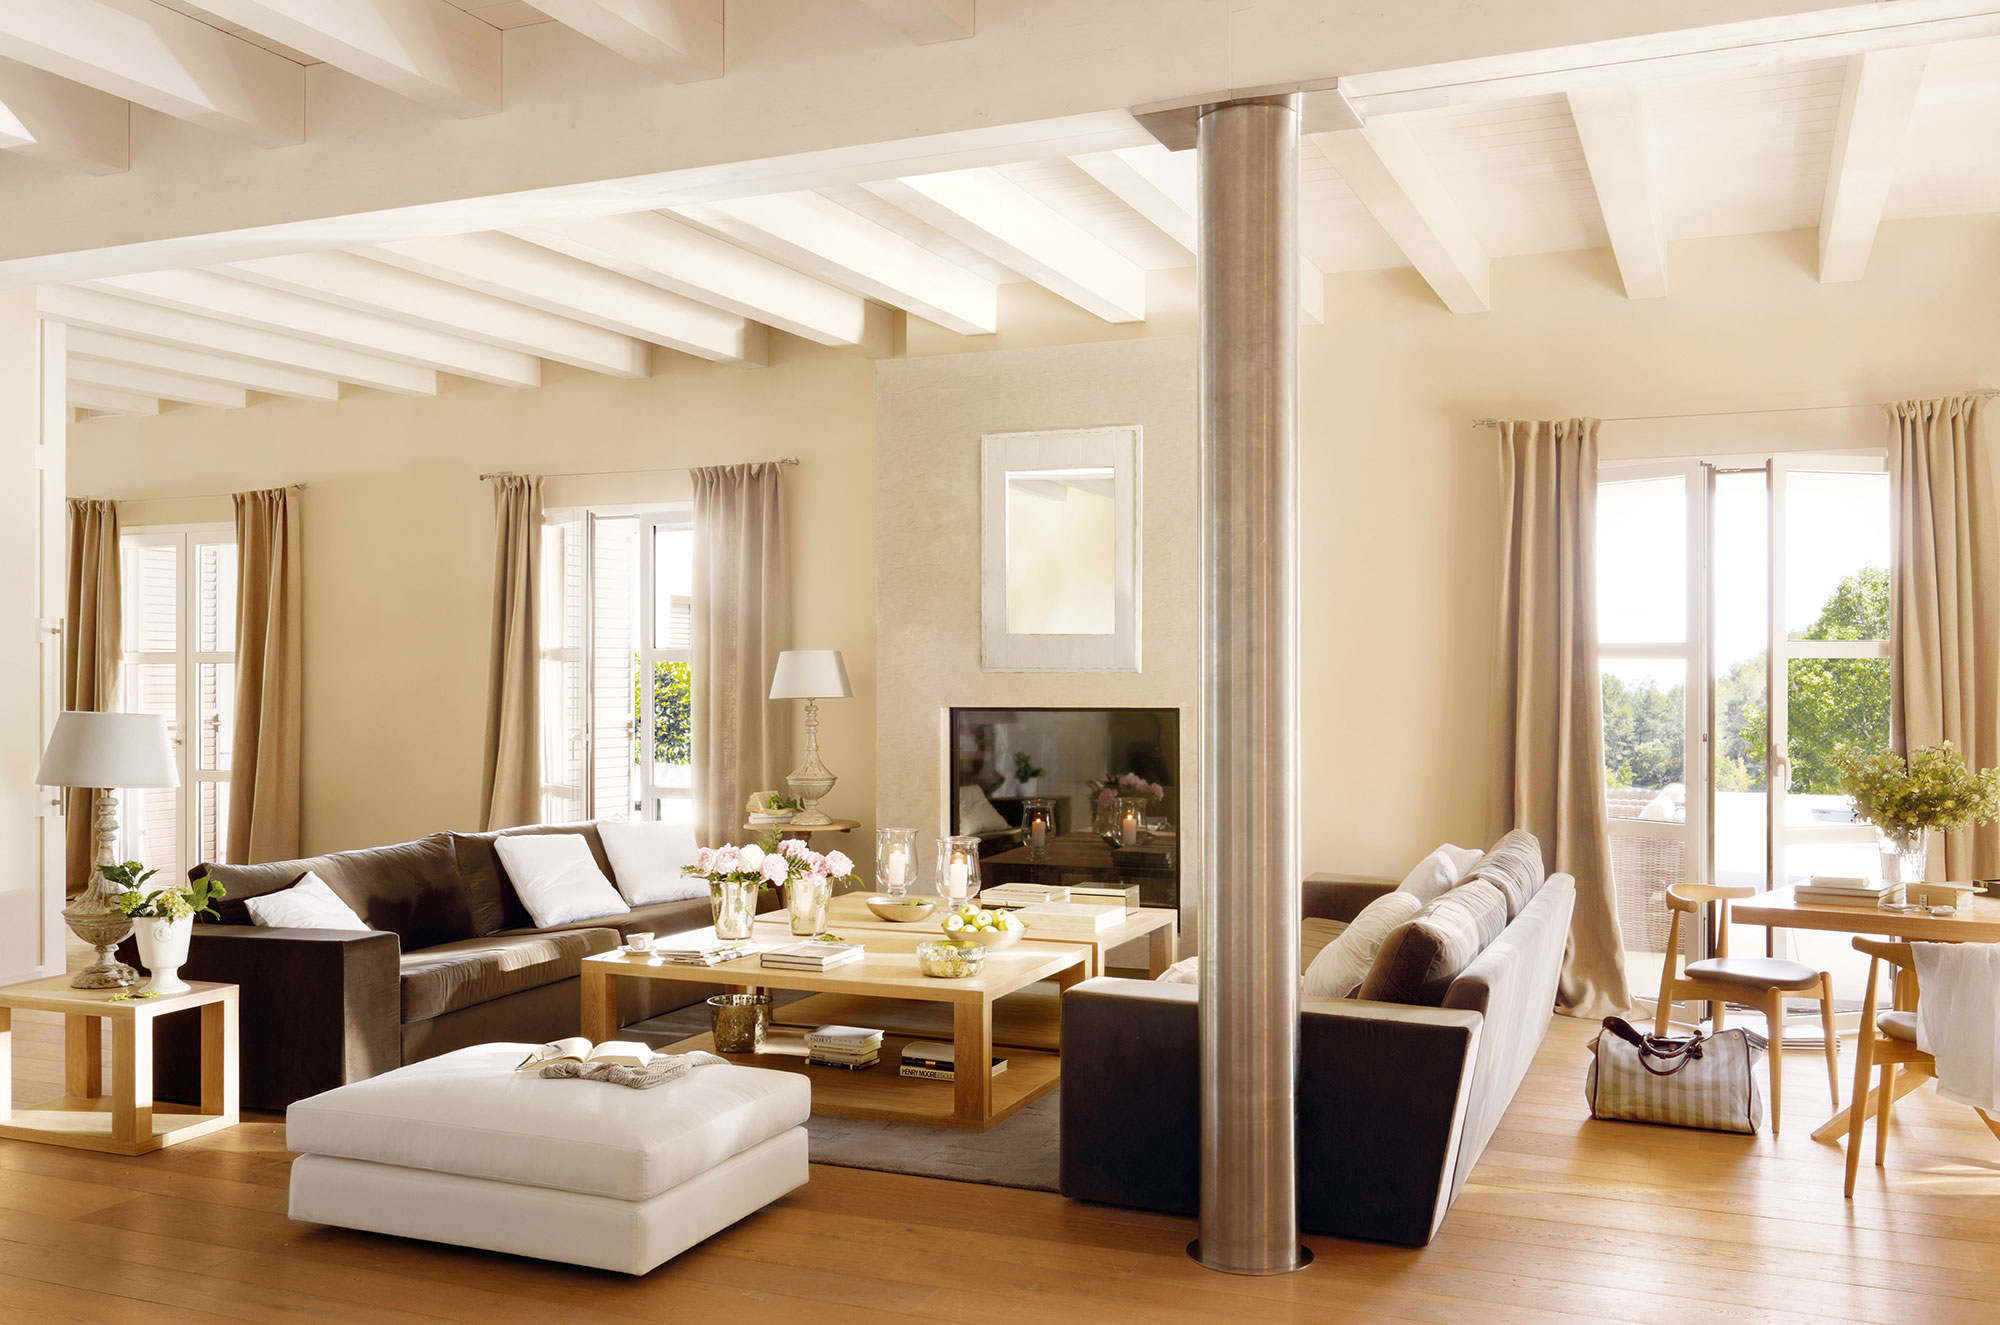 Salón amplio con vigas de madera, sofás modernos y distribución simétrica